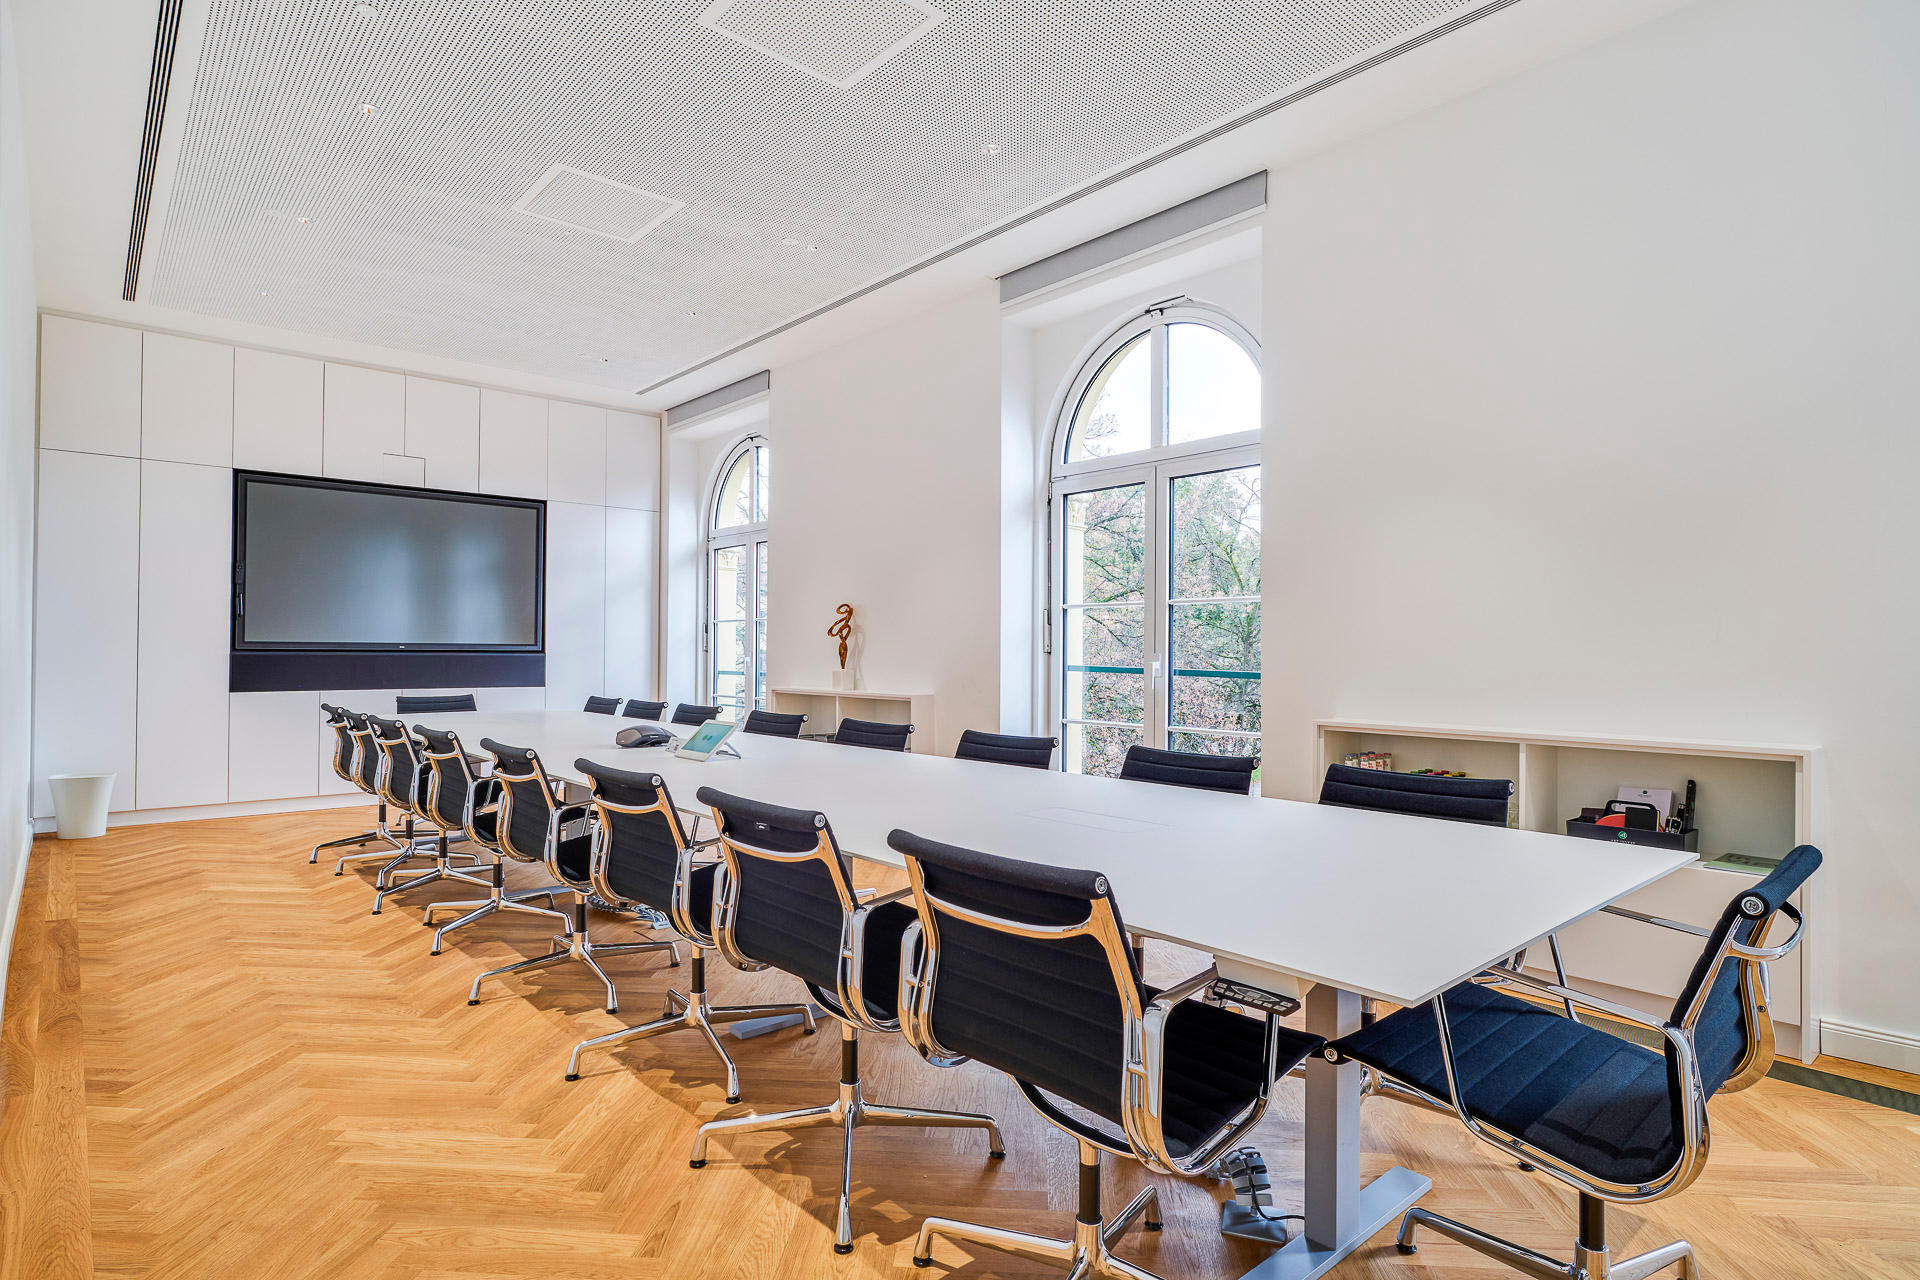 Bilder Art-Invest Real Estate Management GmbH & Co. KG | München